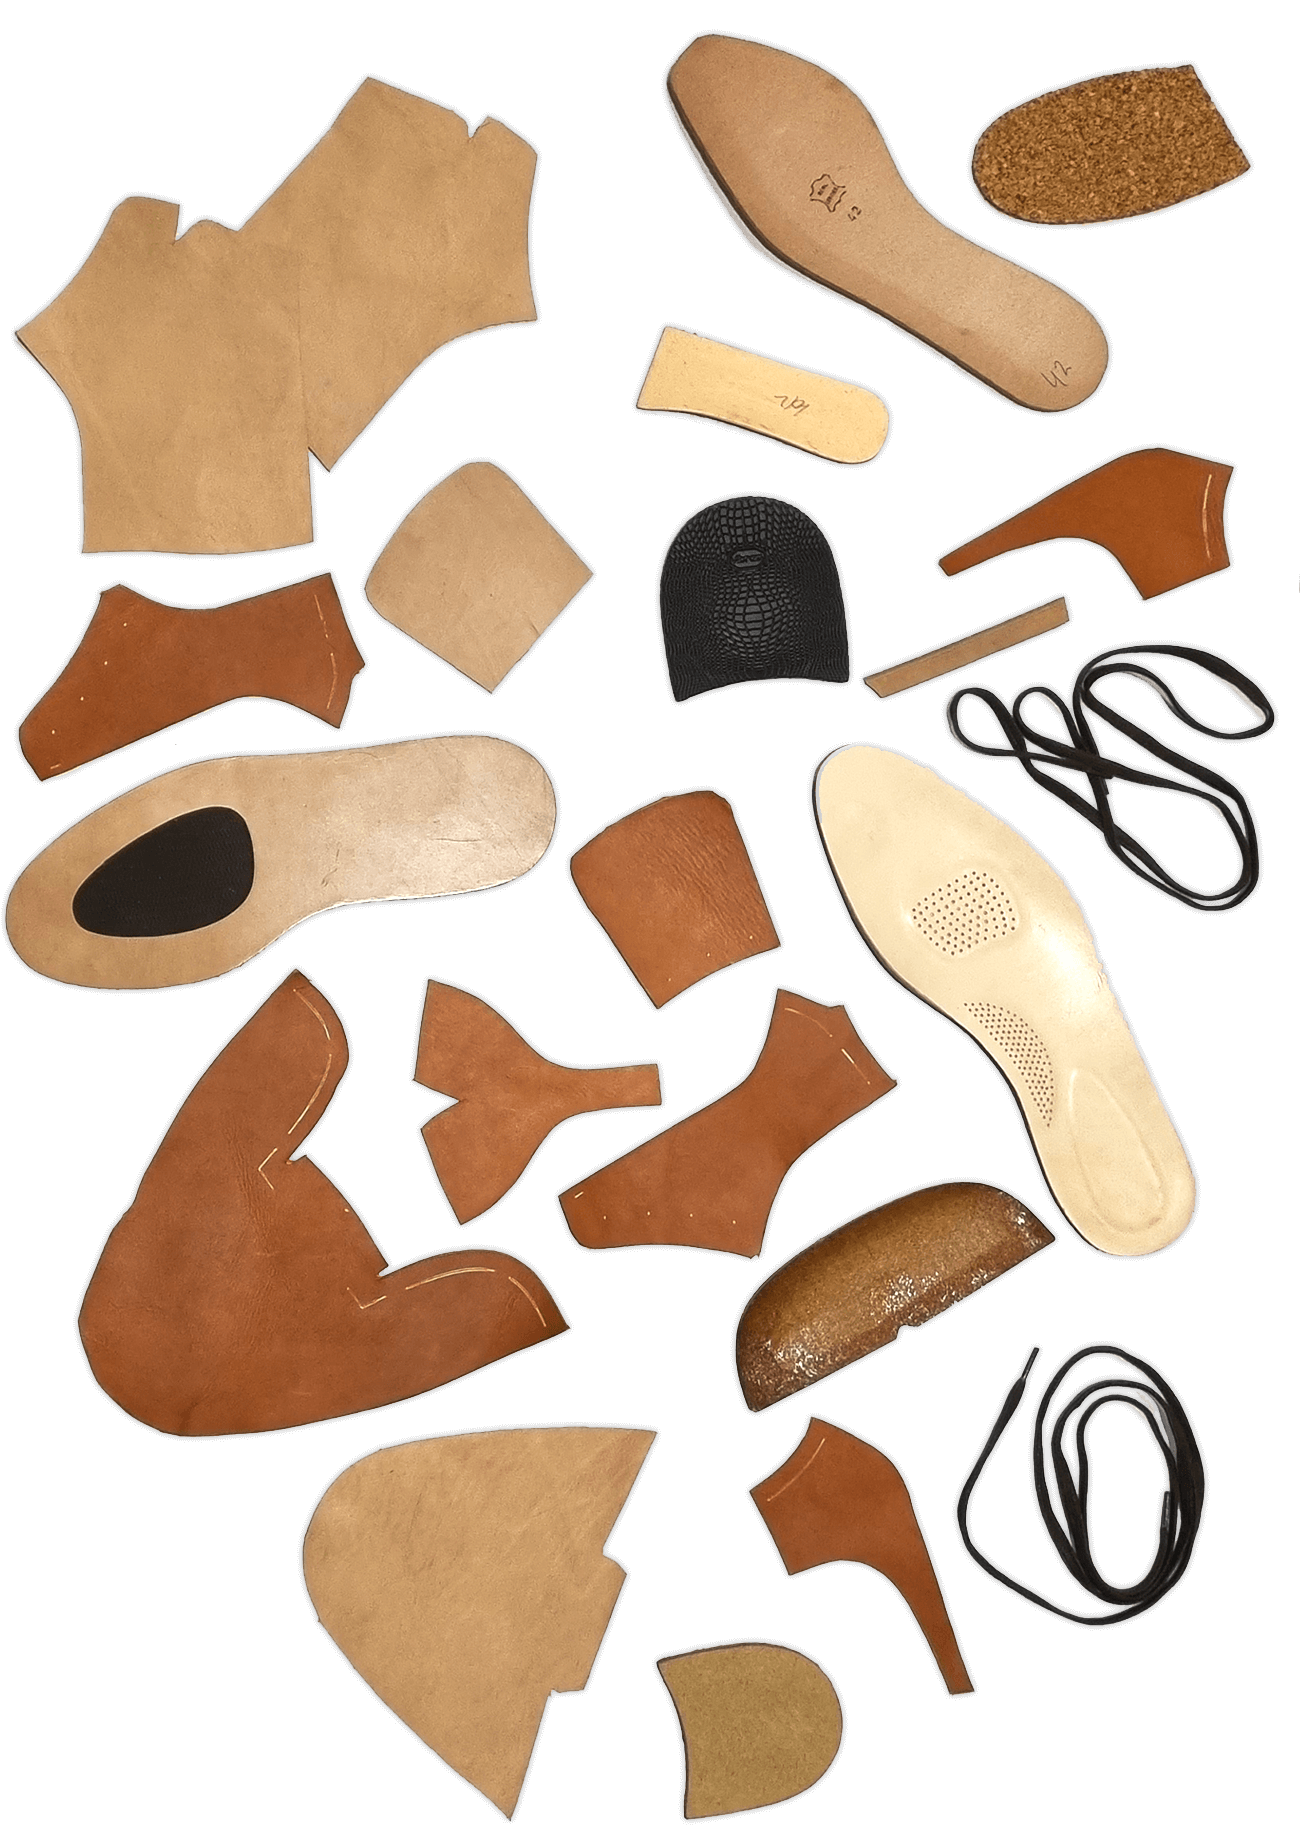 Einzelteile eines rahmengenähten Schuhs